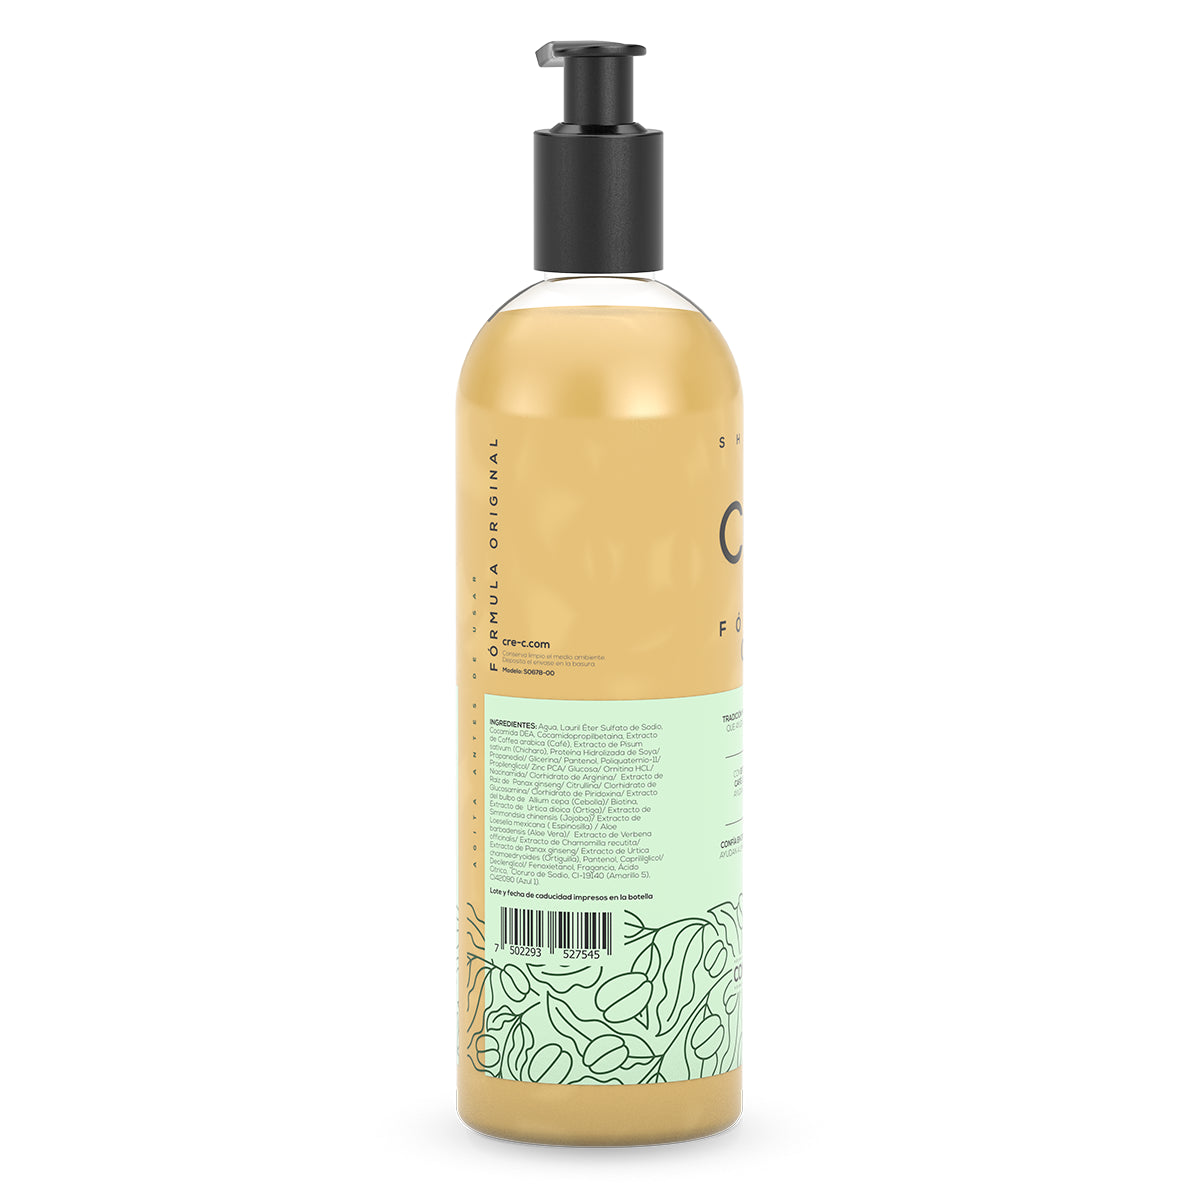 Shampoo Cre-C® Fórmula Original 500ml